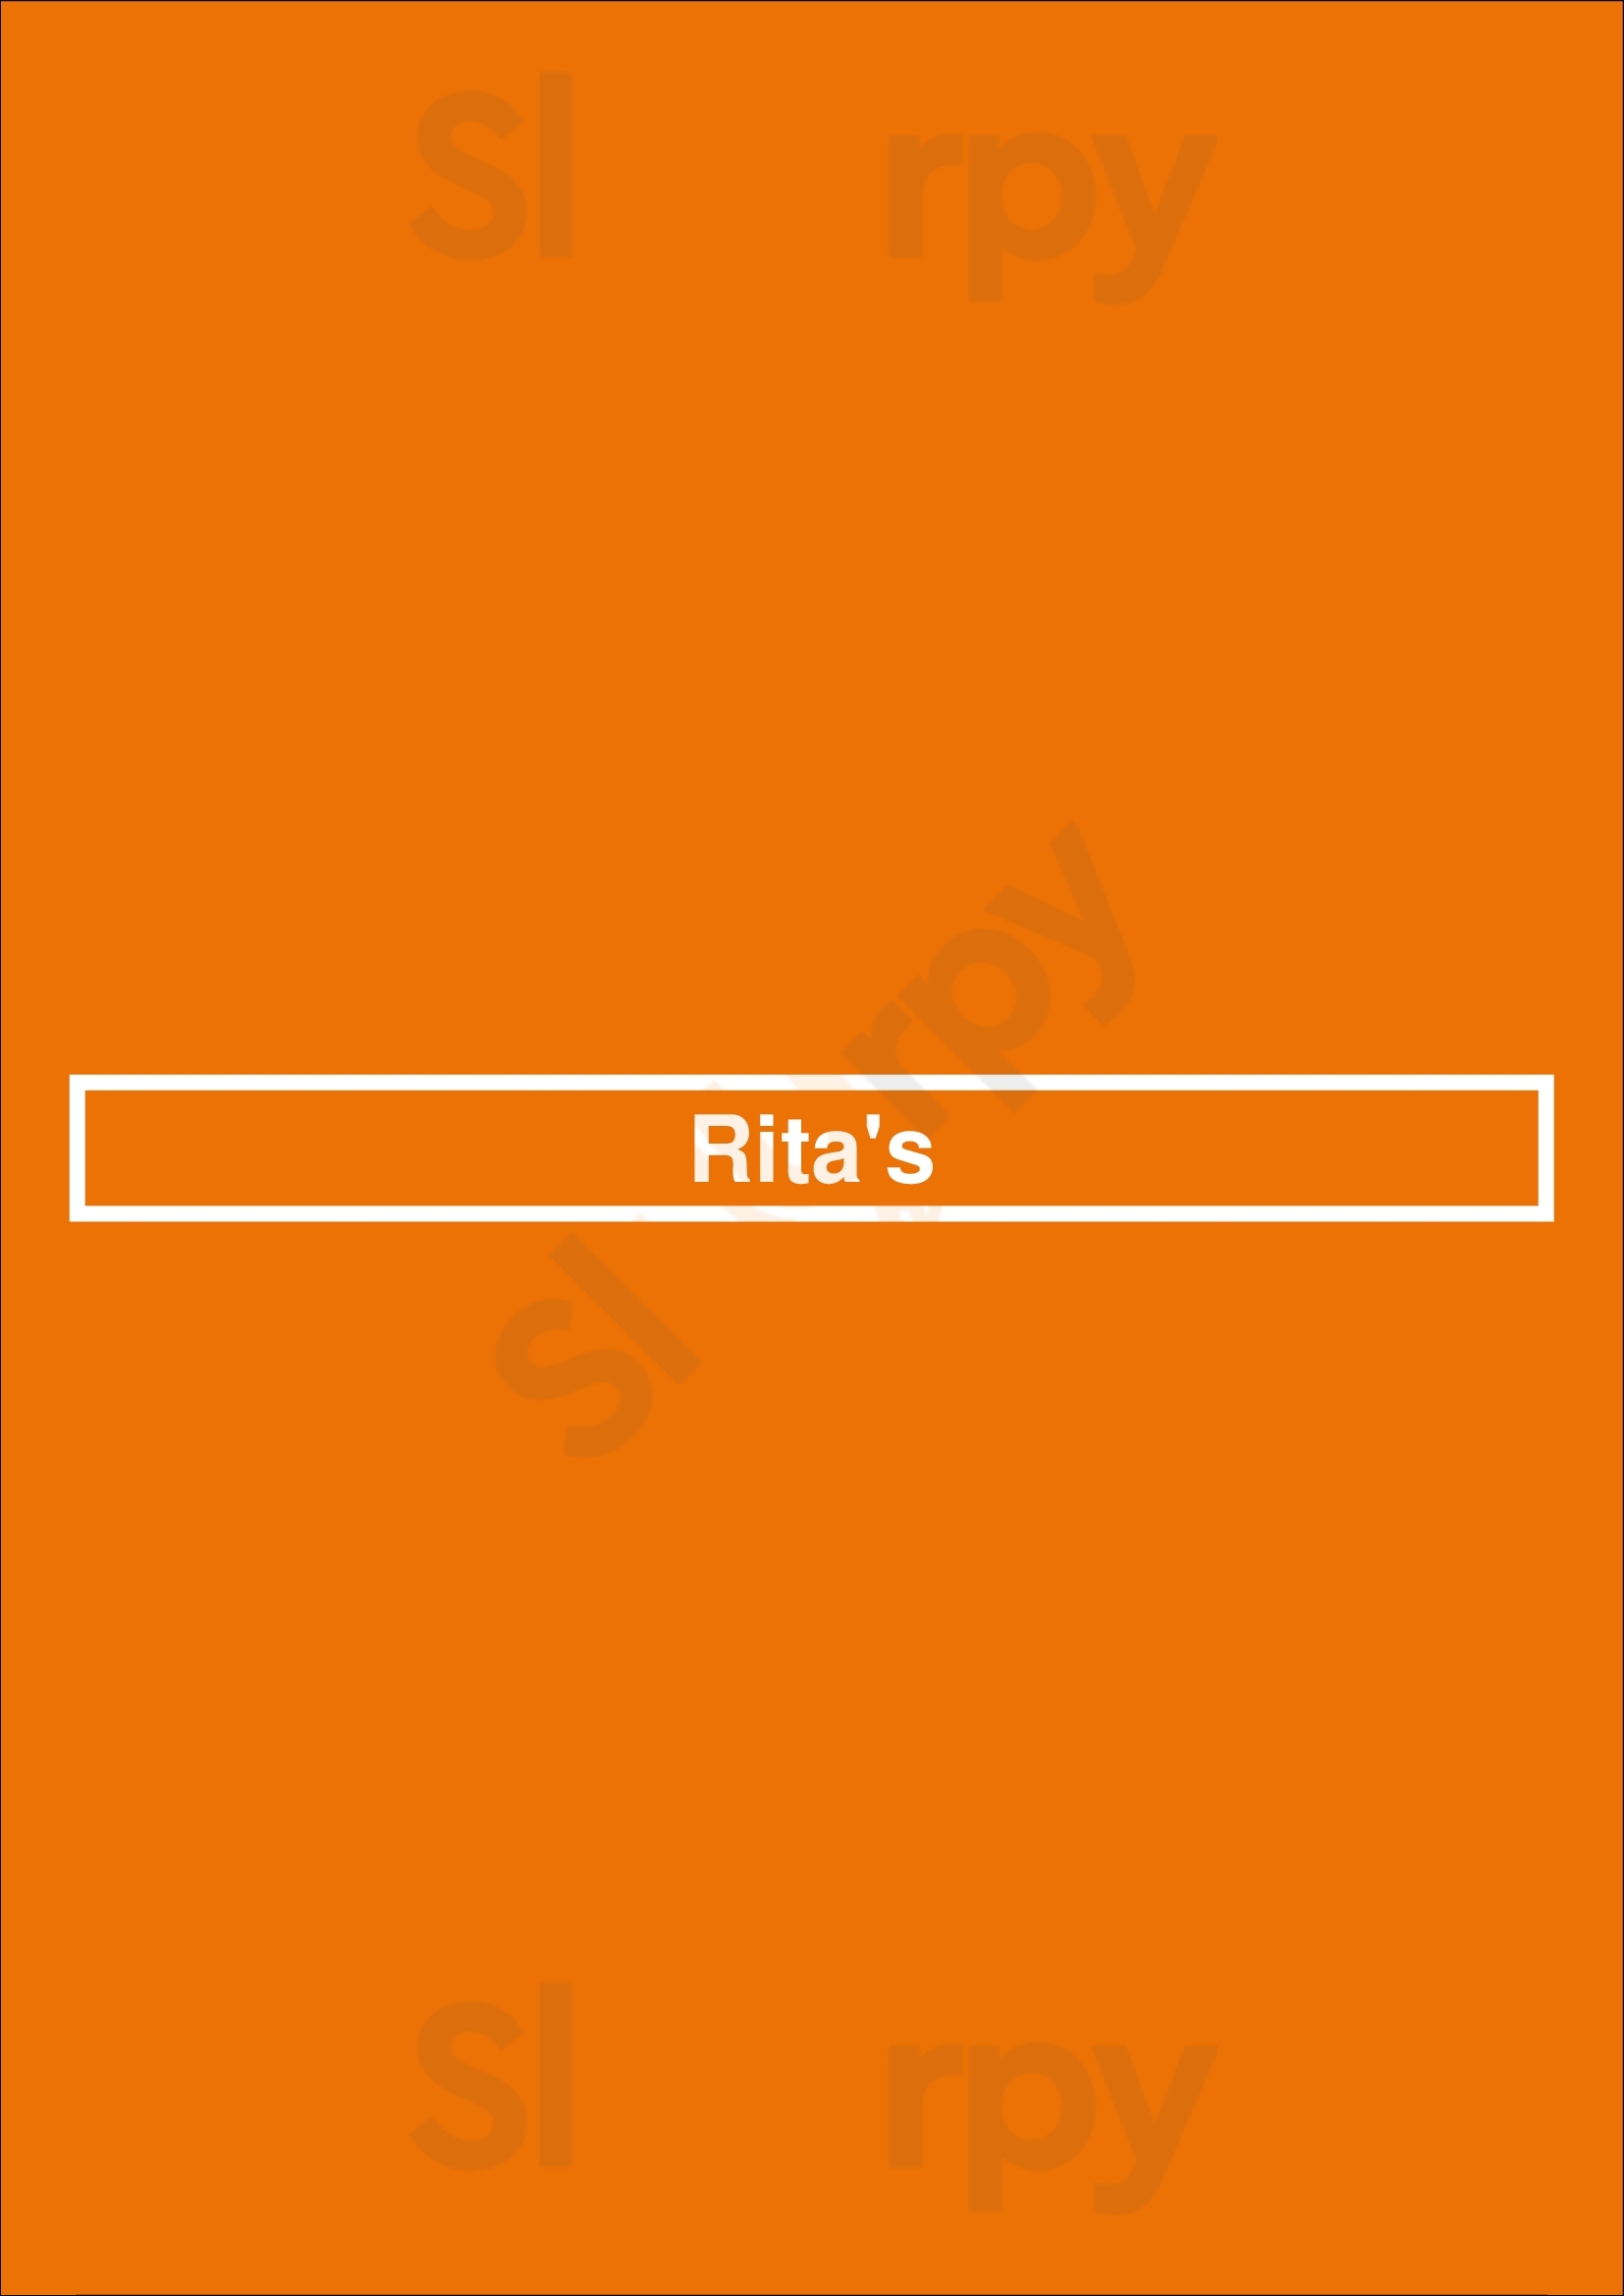 Rita's Washington DC Menu - 1